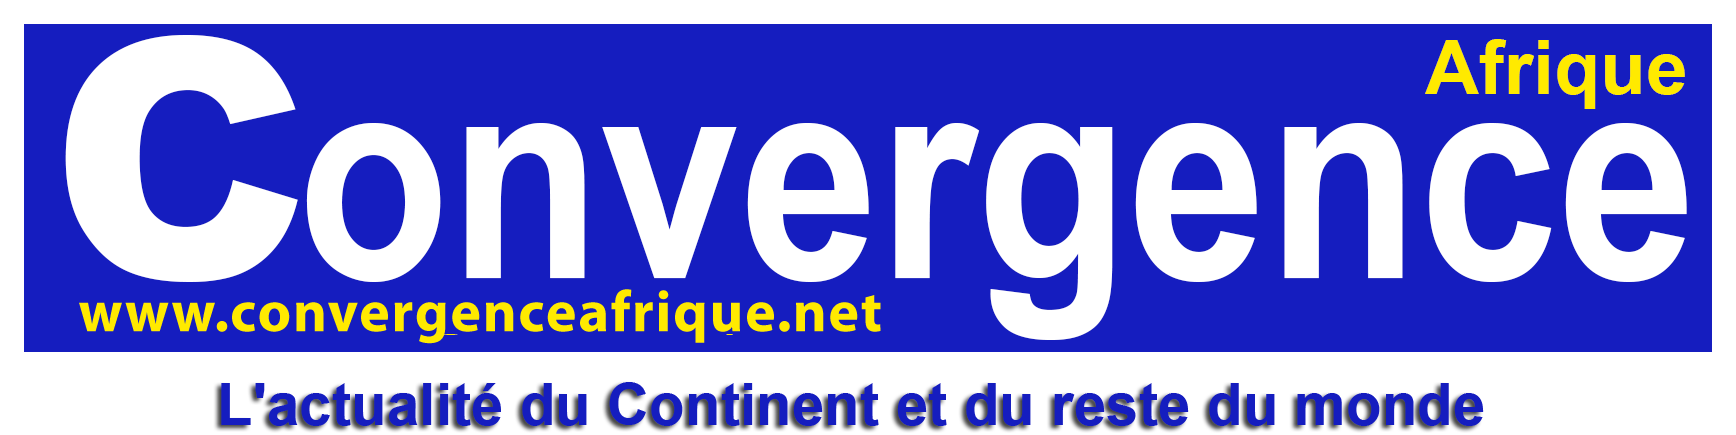 ConvergenceAfrique6-copy-1